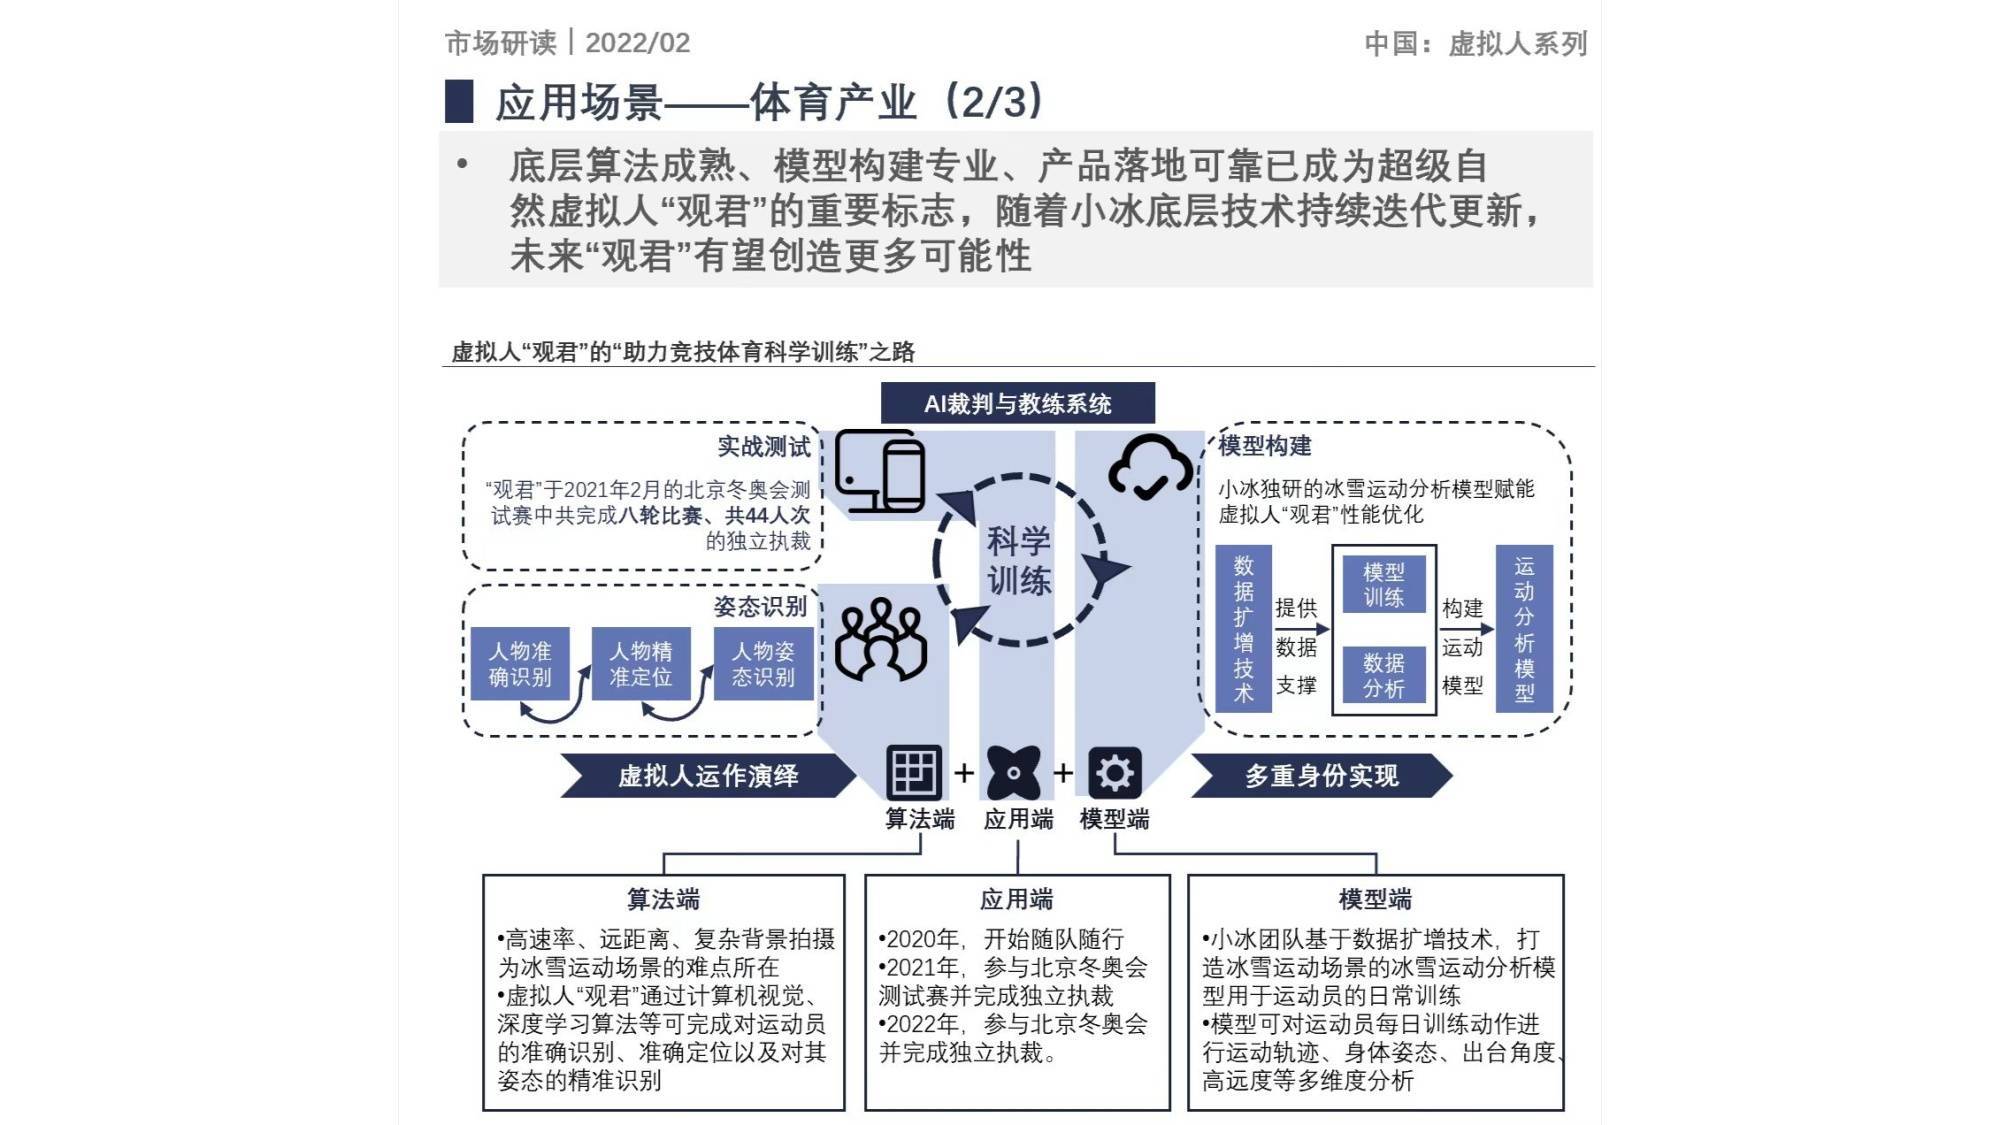 虚拟人
:《2022年中国虚拟人财产开展白皮书》 小冰领跑虚拟人赛道